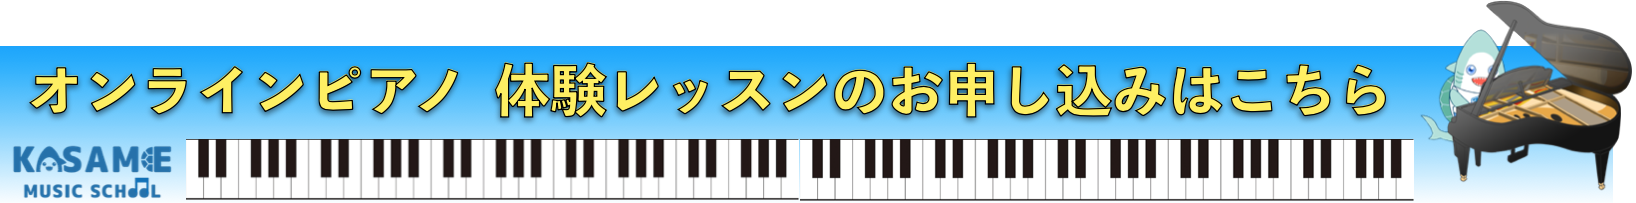 オンラインピアノバナー